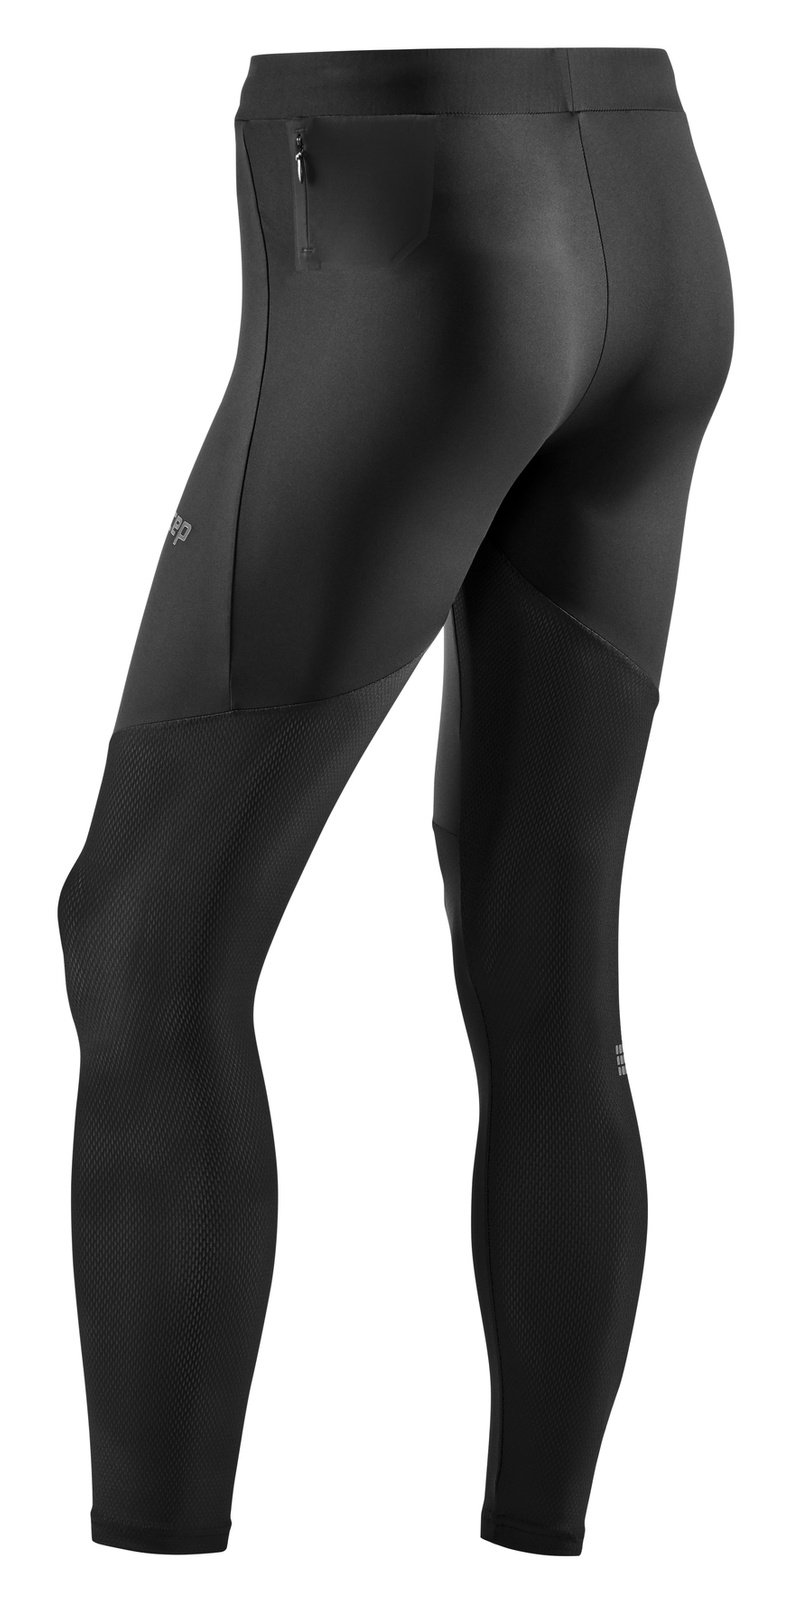 Męskie długie legginsy sportowe do biegania CEP Ultralight czarne, Odzież  sportowa i kompresyjna \ Męska \ Spodnie